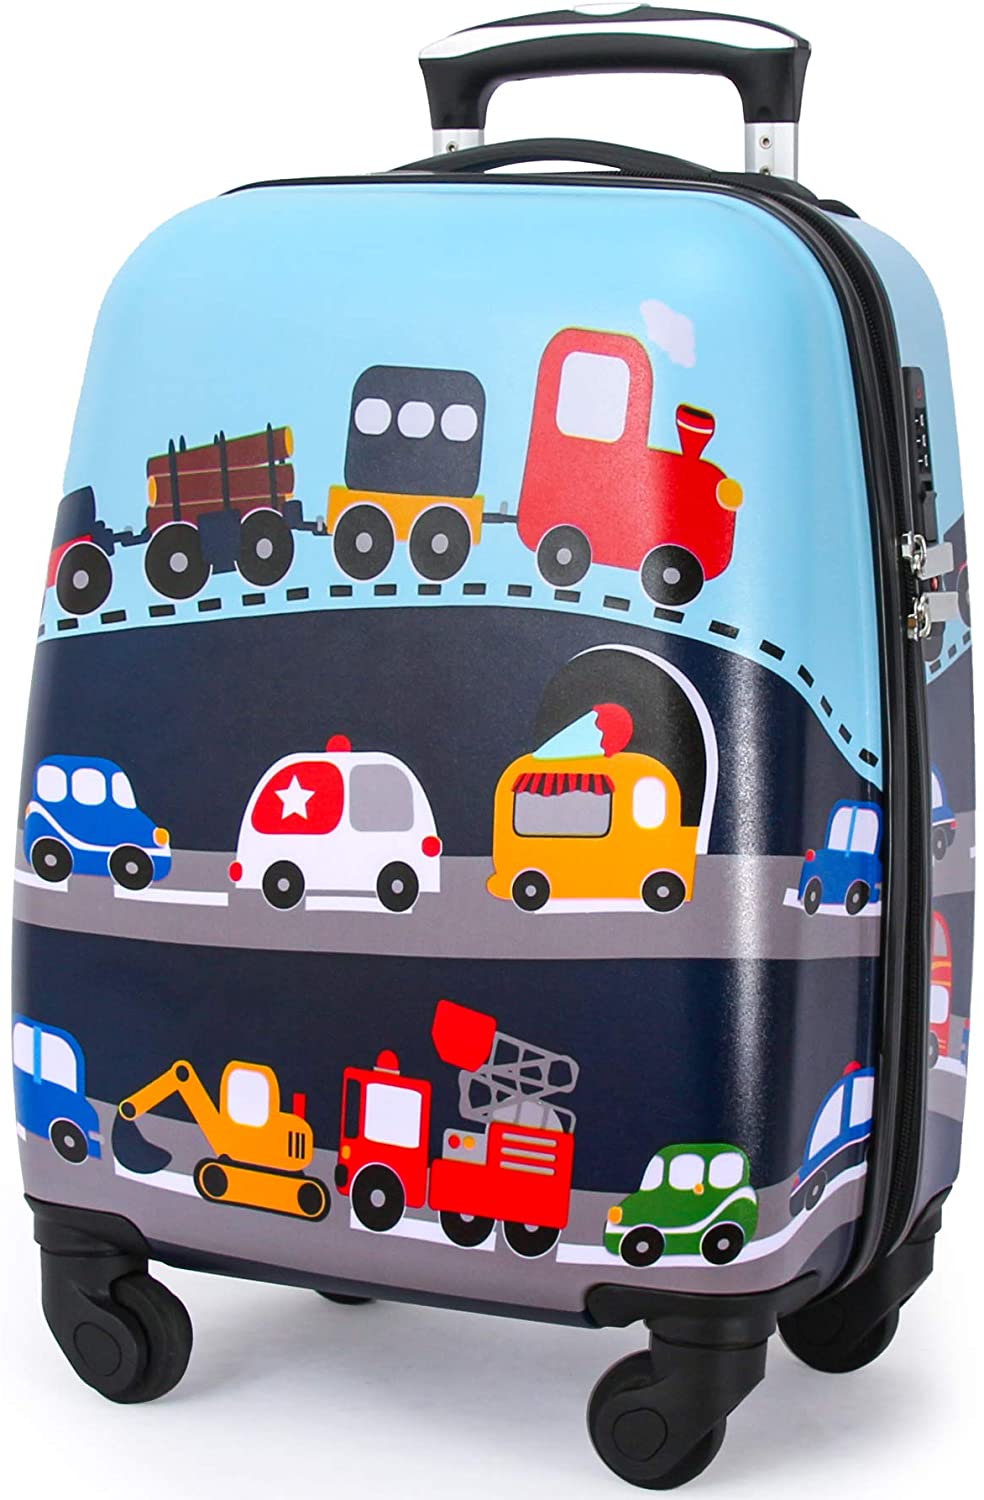 Lttxin Ergonomic Spinner Luggage For Kids